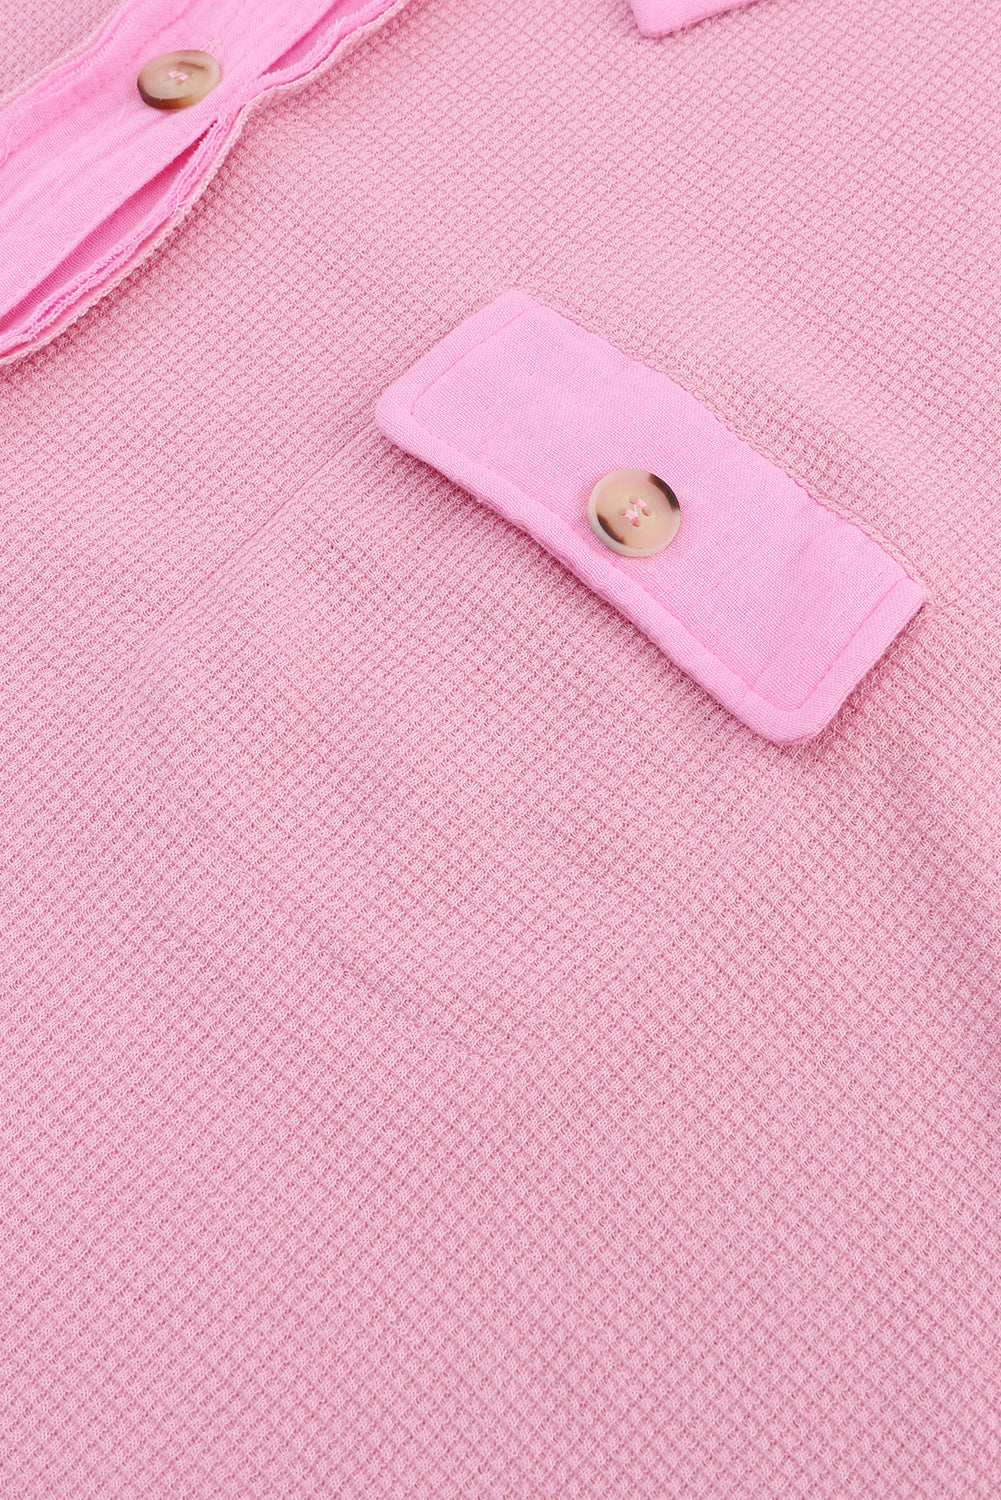 Rožnata vafelj pletena majica z izpostavljenimi šivi velike velikosti